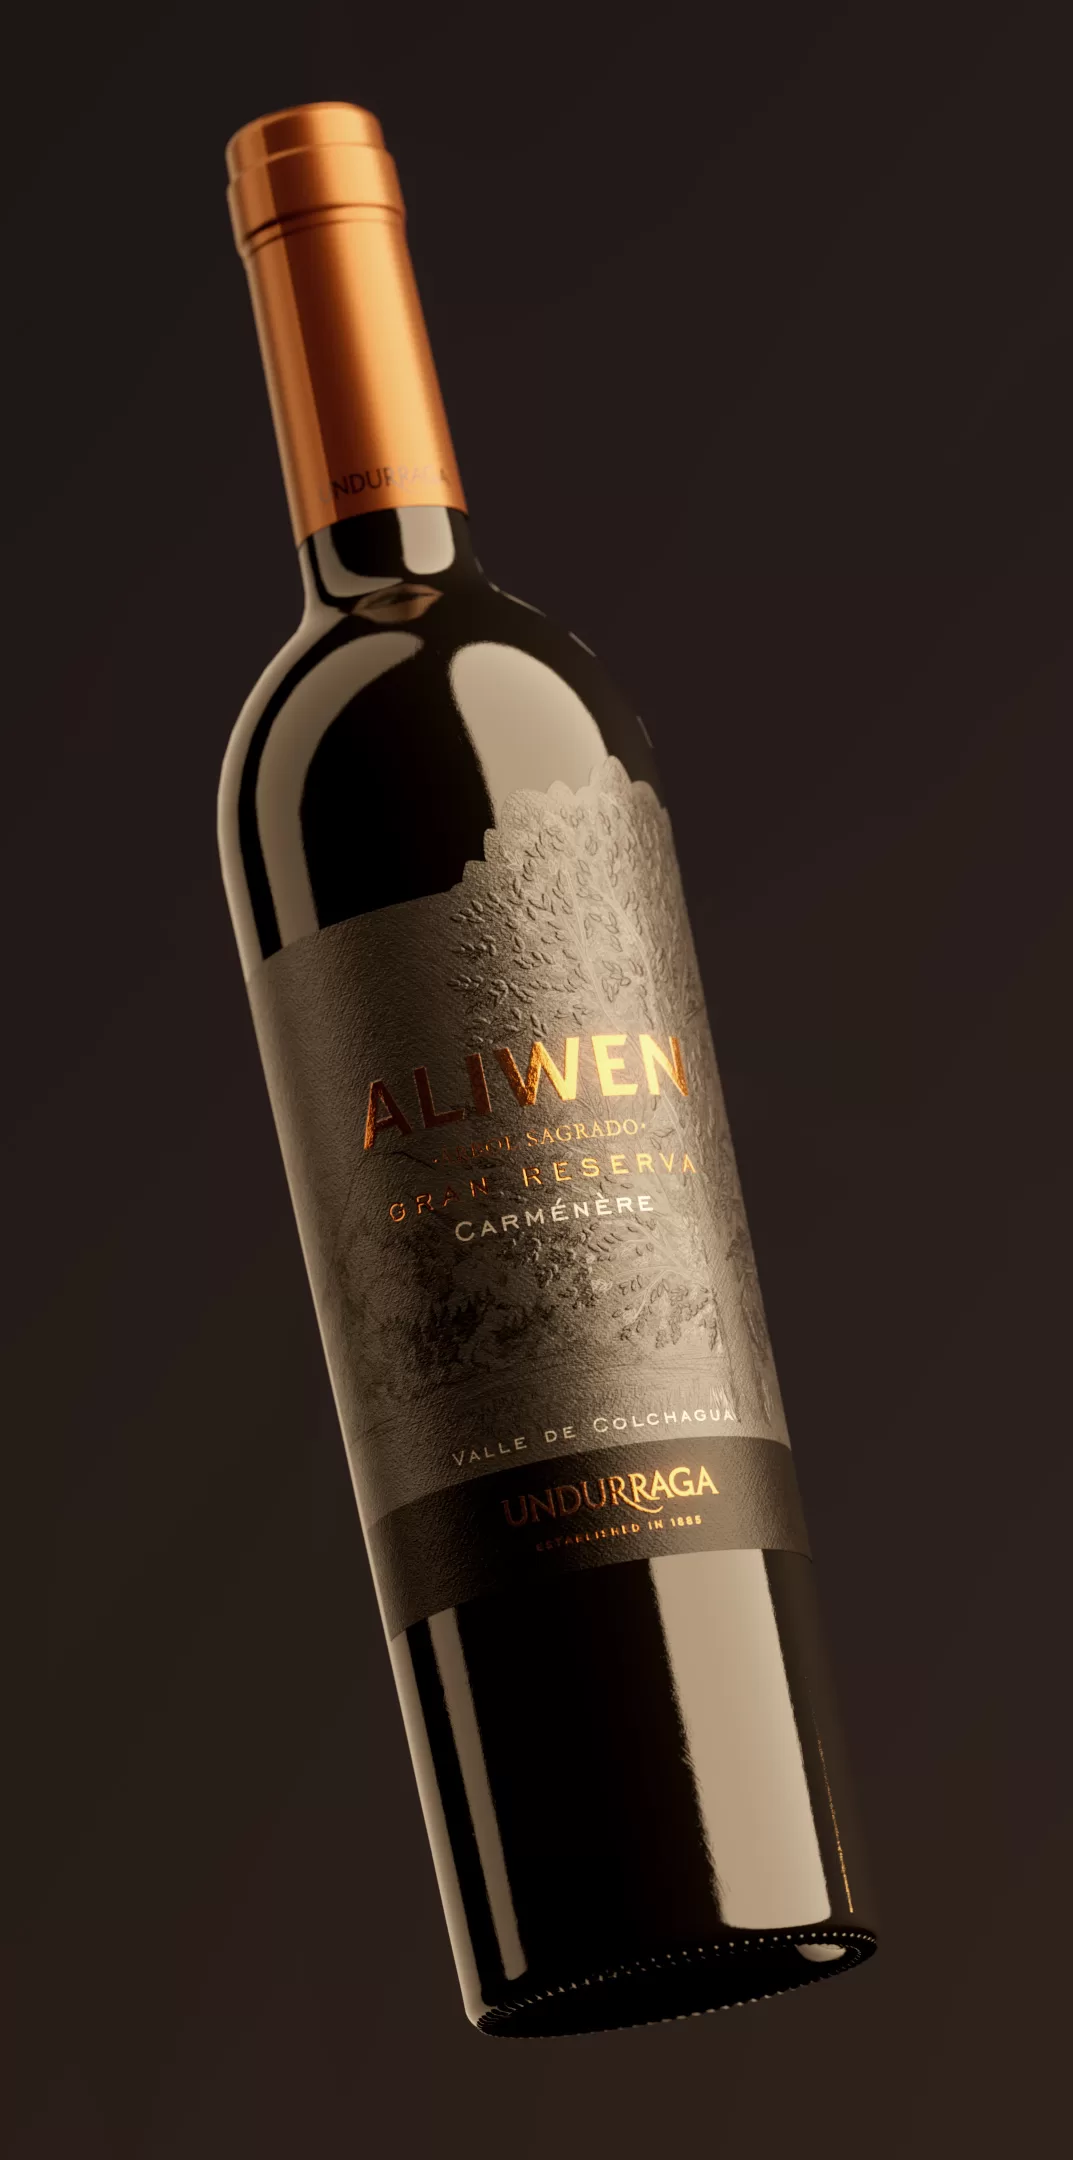 Aliwen Gran Reserva Vino tinto chile Undurraga